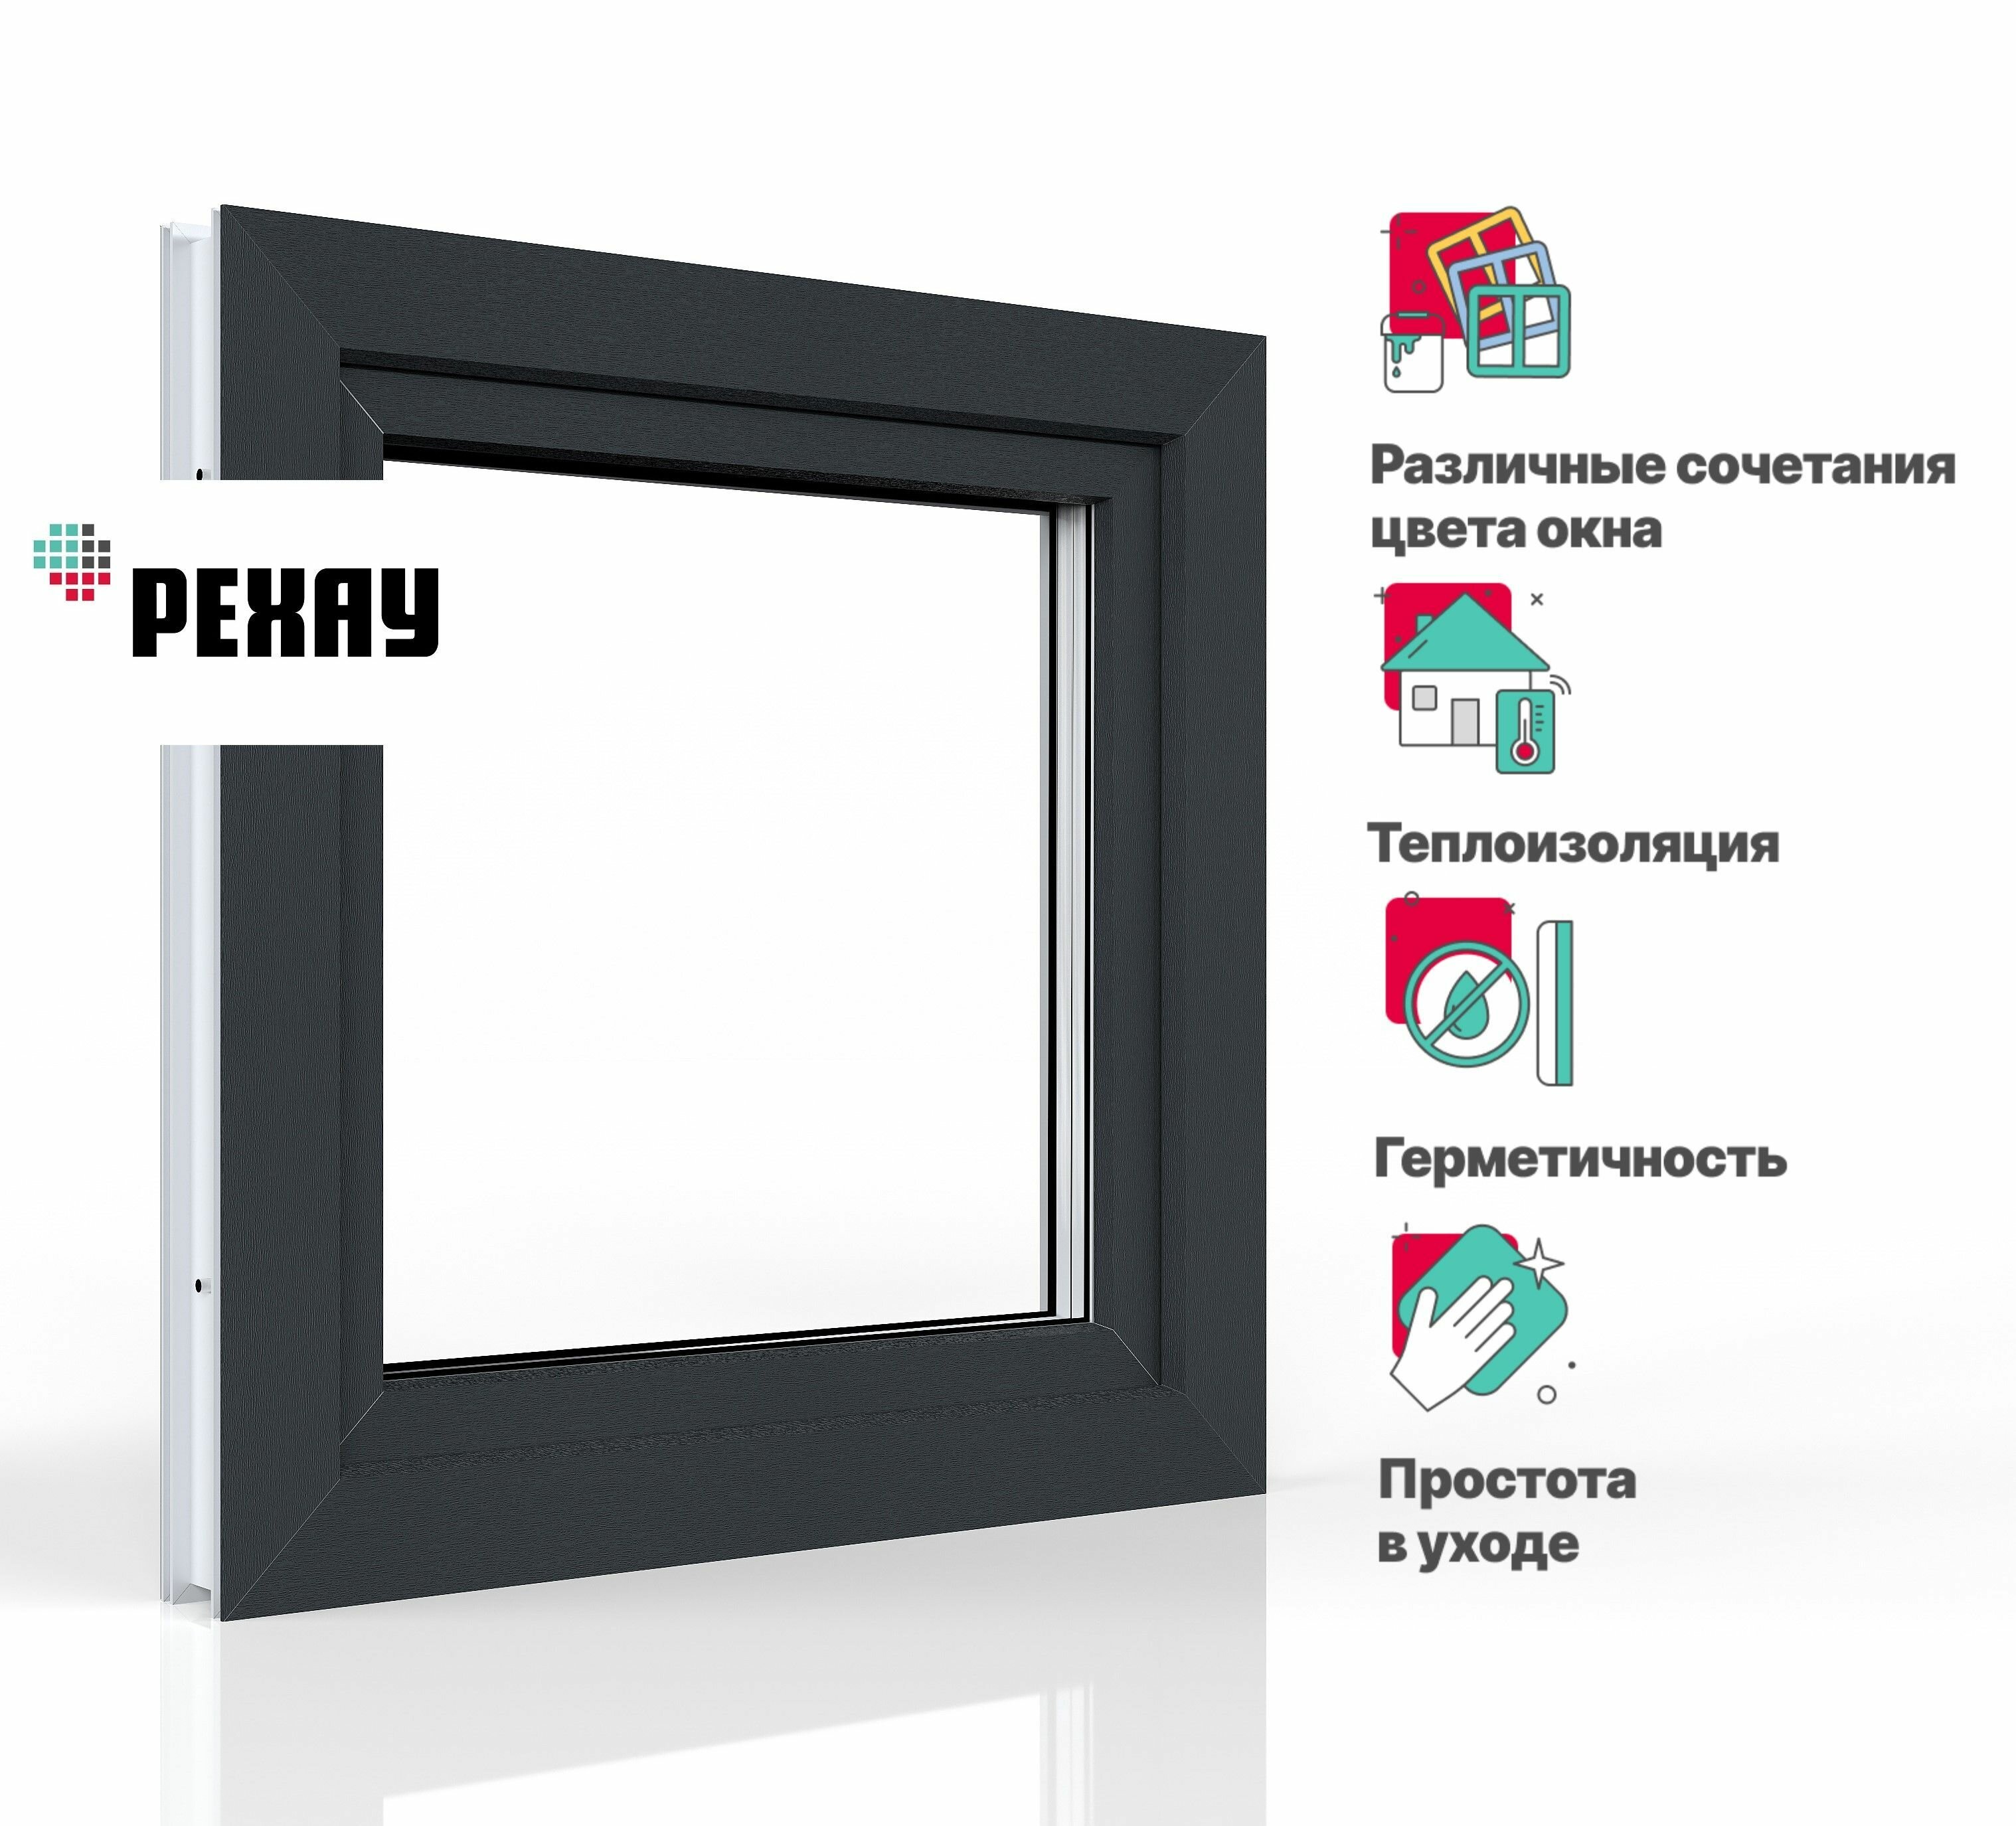 Пластиковое окно ПВХ REHAU BLITZ 600х600 мм (ВхШ) с учетом подставочного профиля одностворчатое поворотно-откидное левое двухкамерный стеклопакет антрацитово-серый снаружи